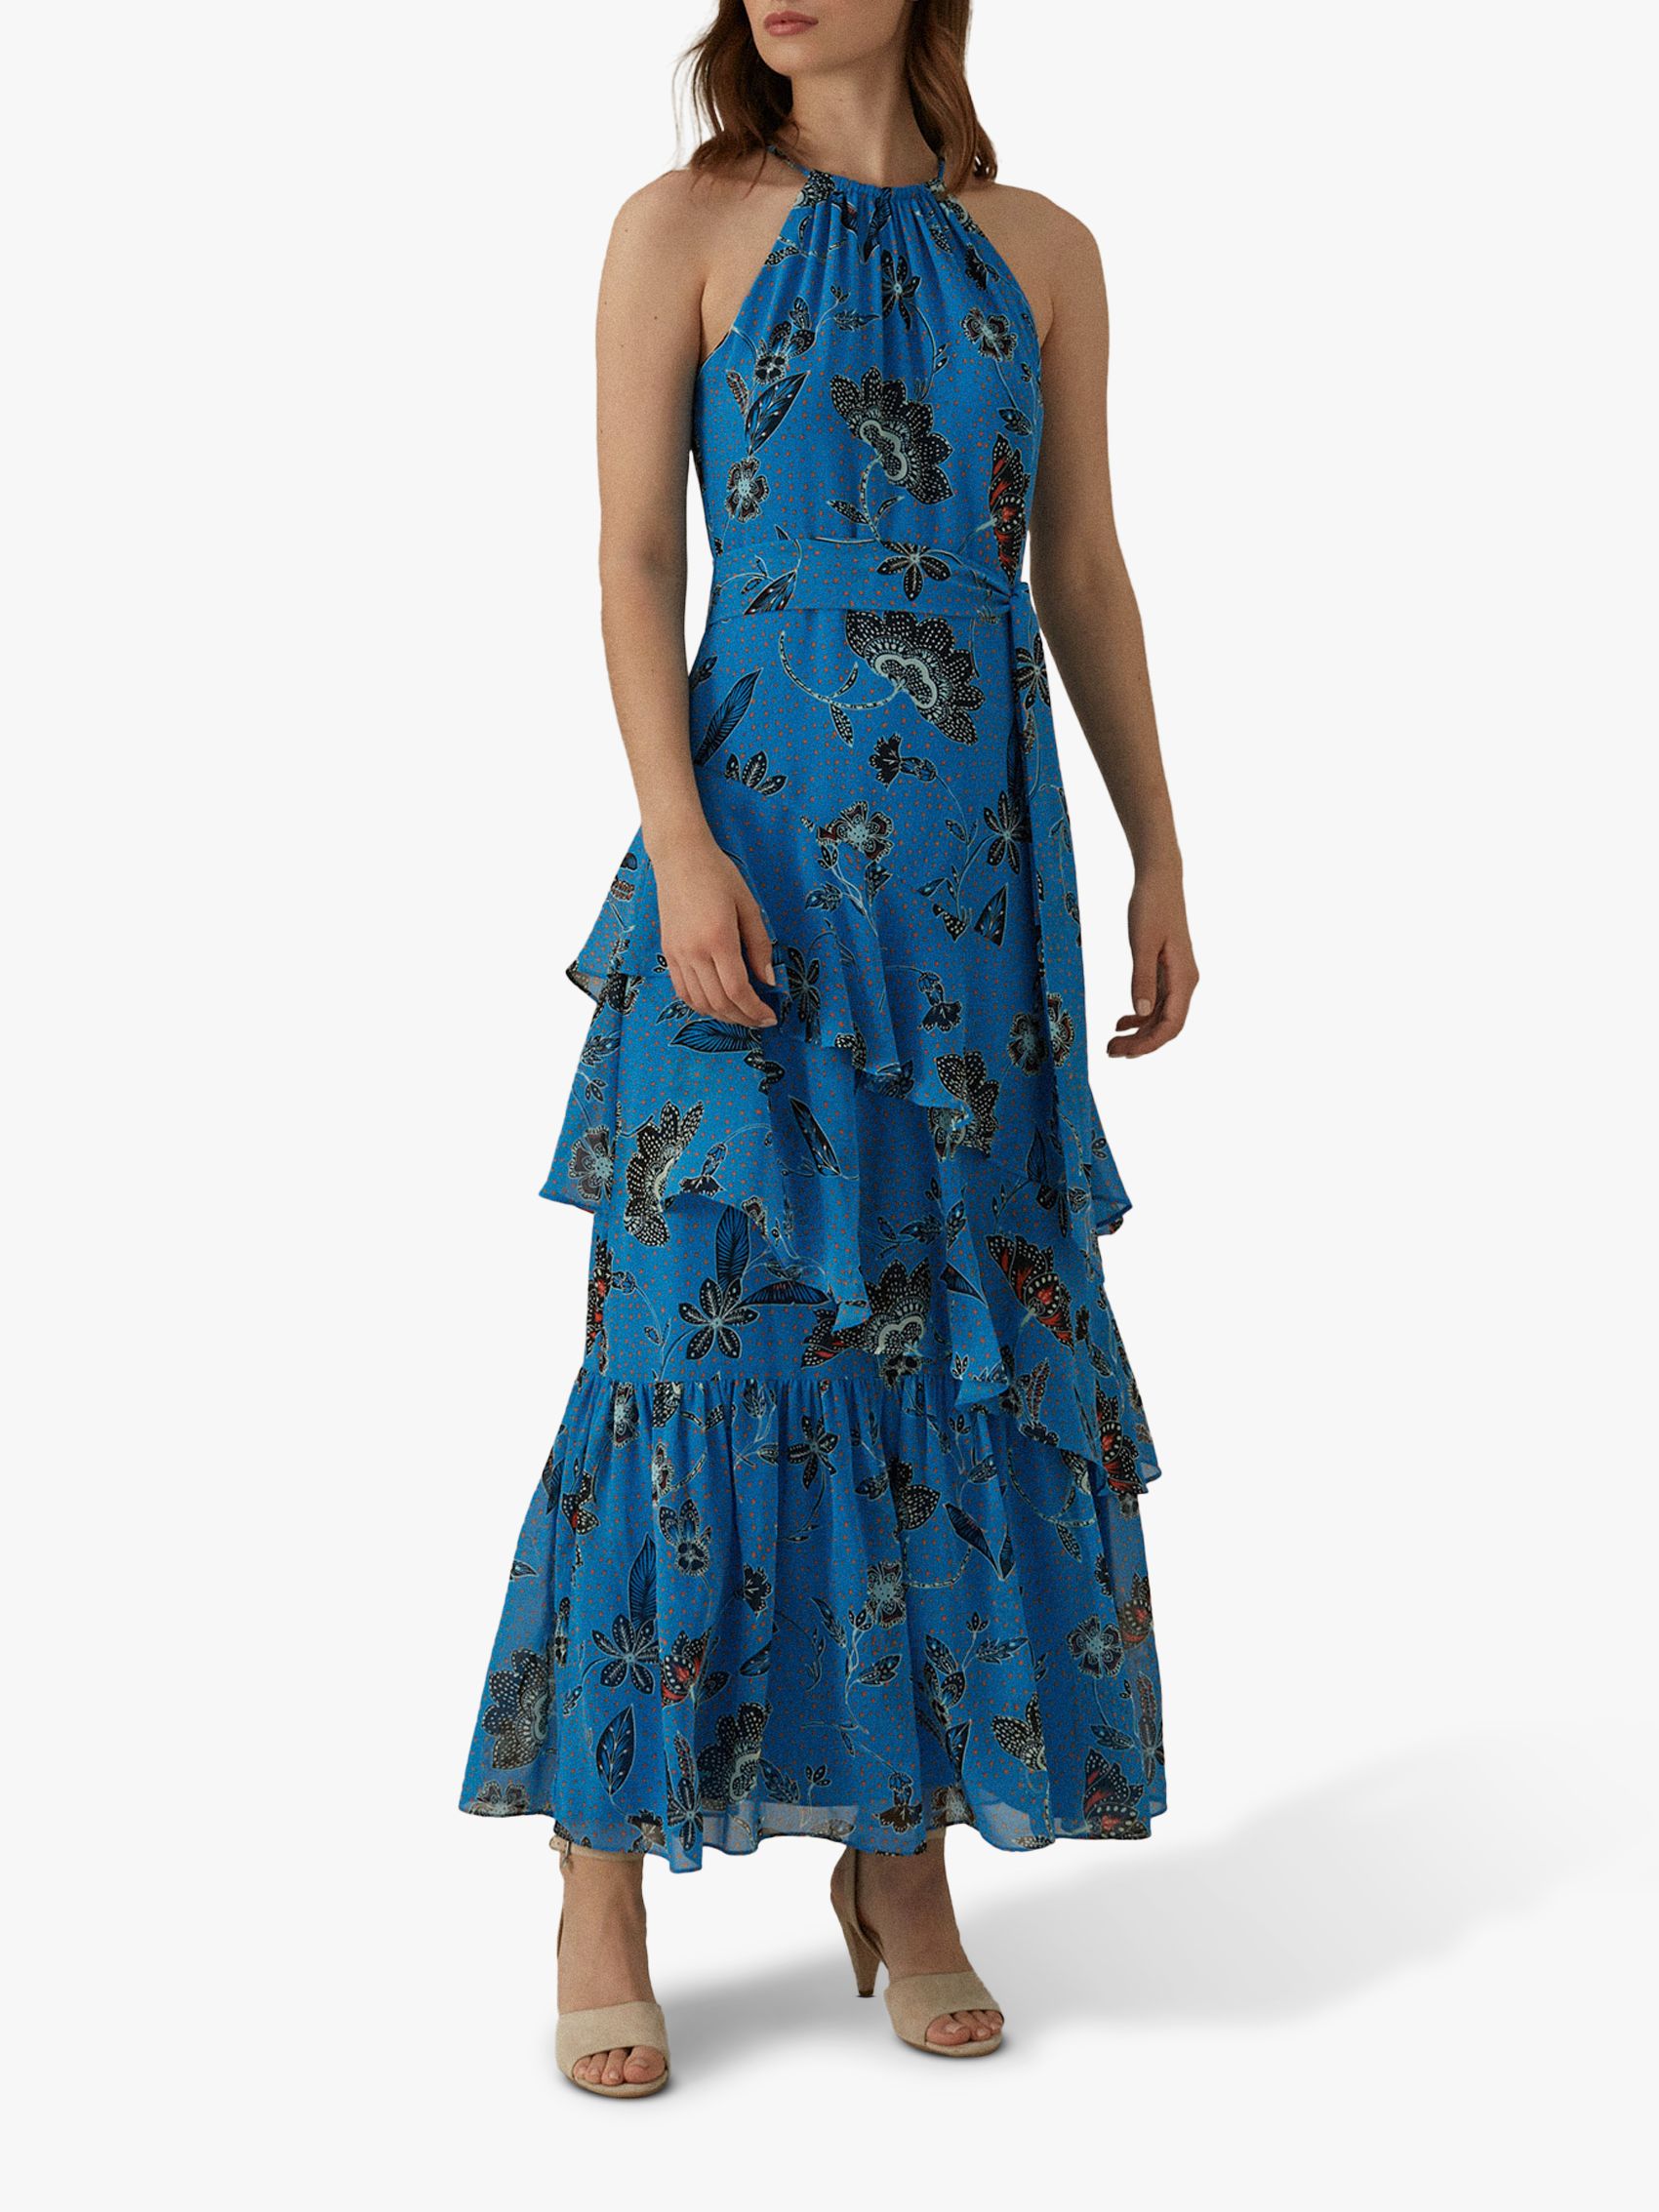 karen millen blue floral dress